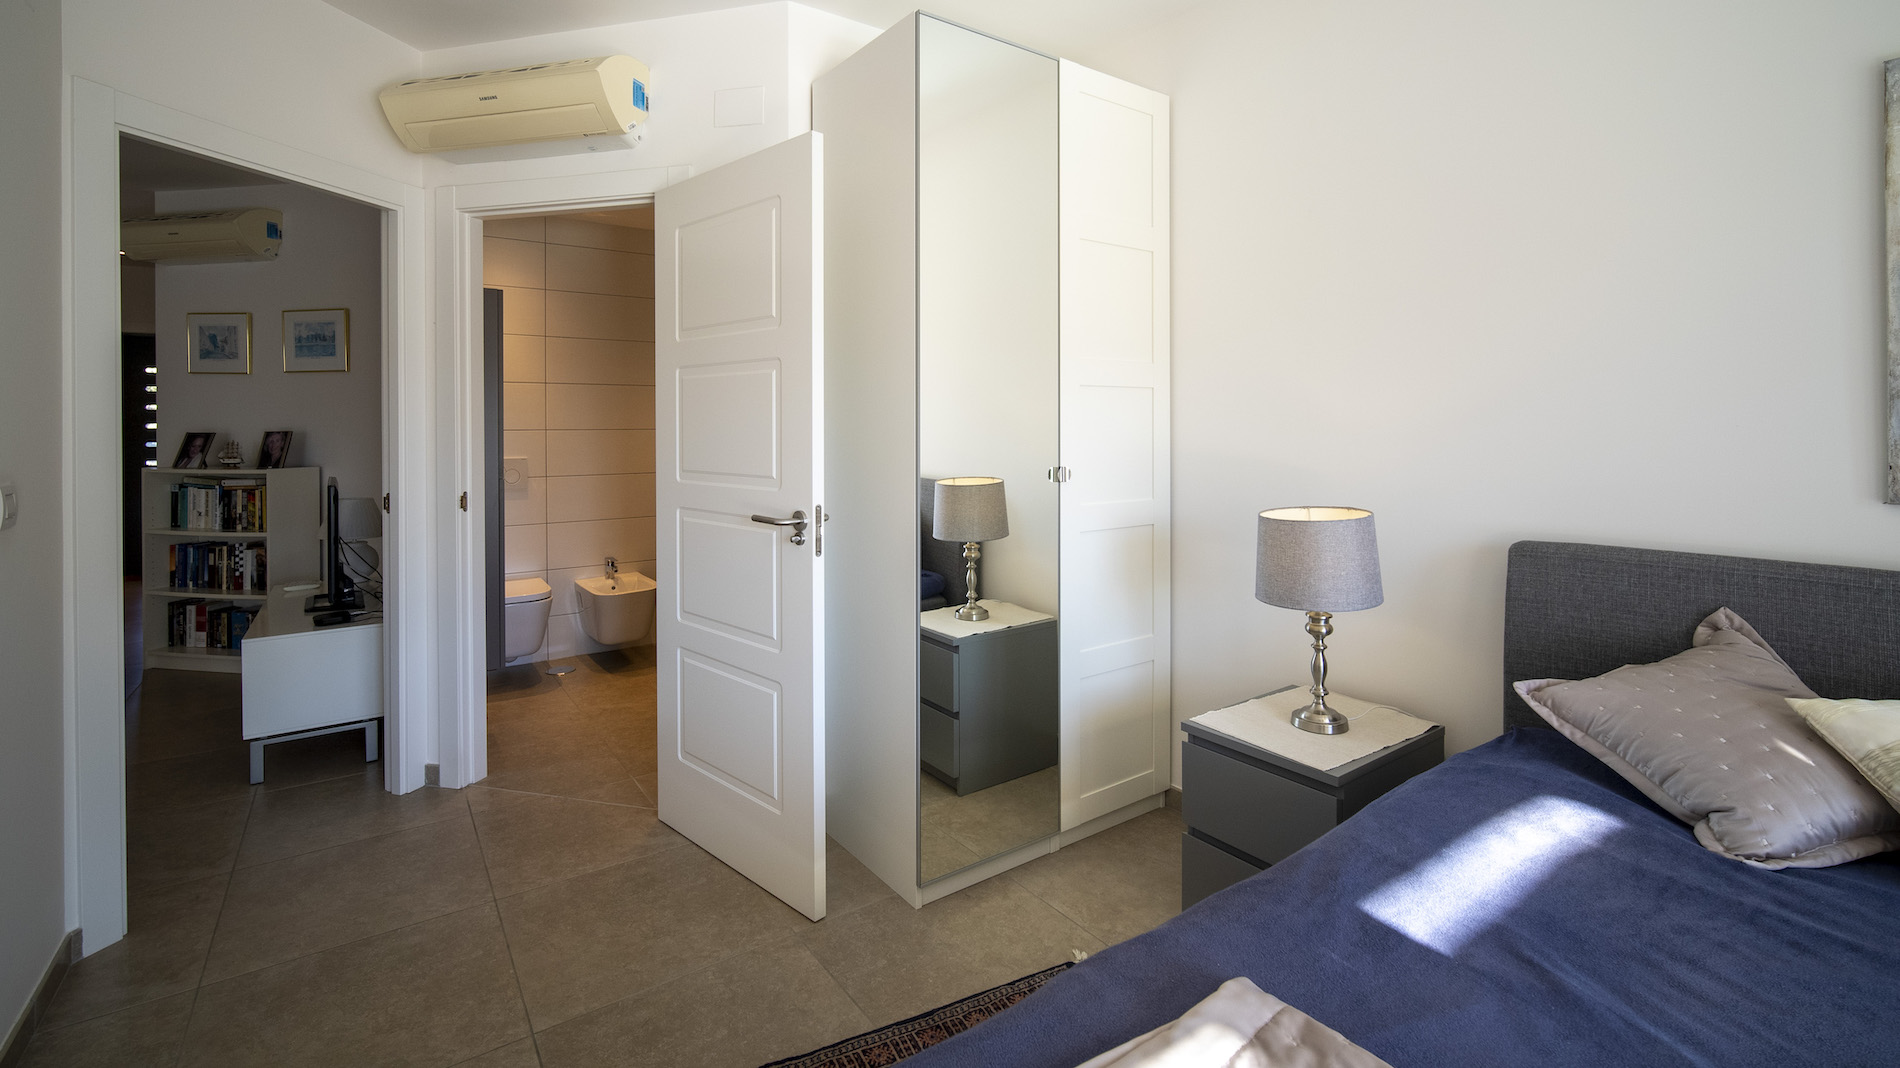 3 bedroom apartment in LuxAlbir